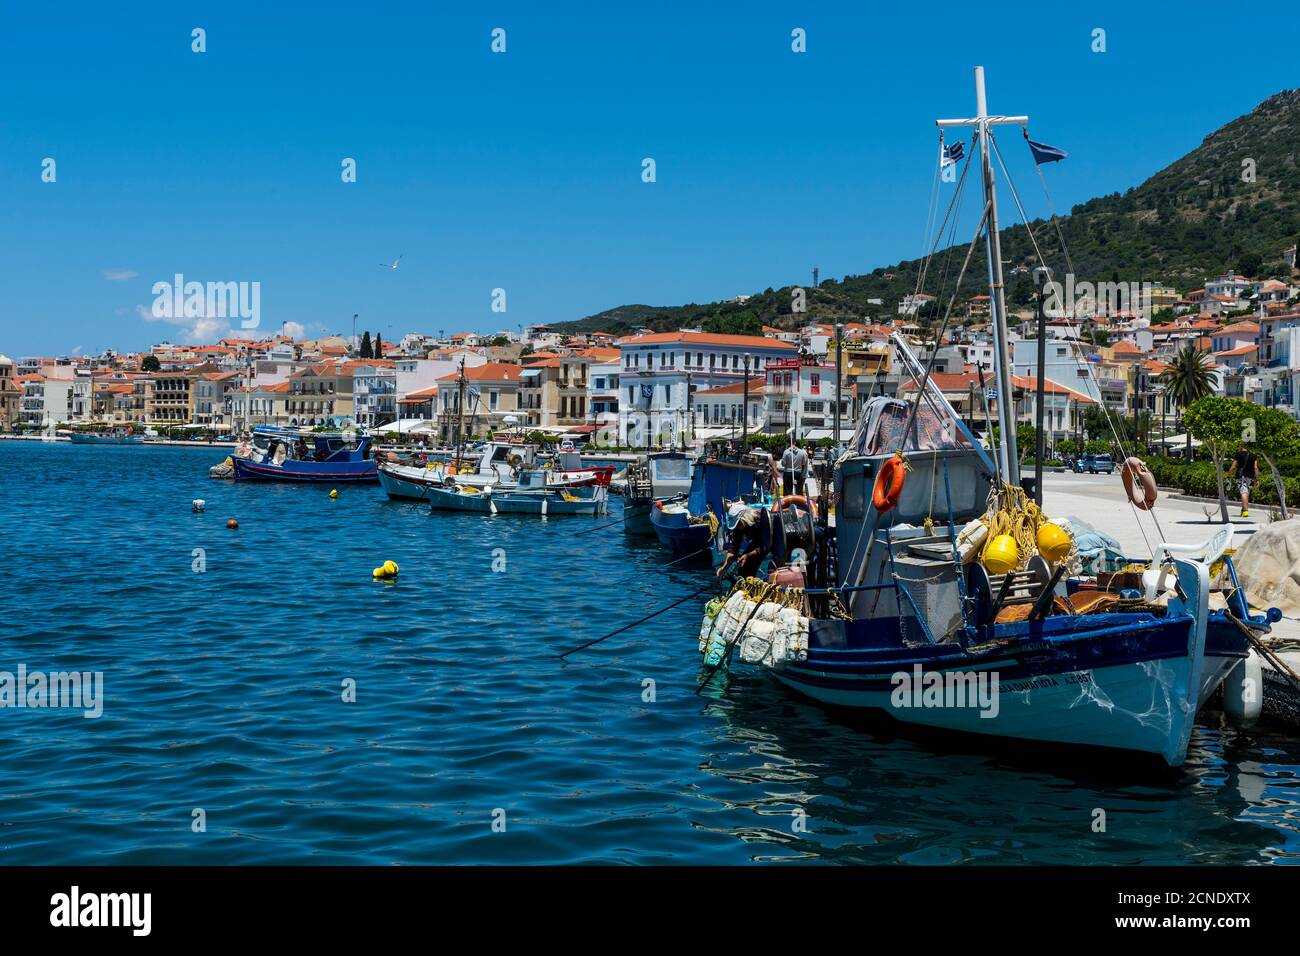 Port de pêche, ville de Samos, Samos, Iles grecques, Grèce, Europe Banque D'Images